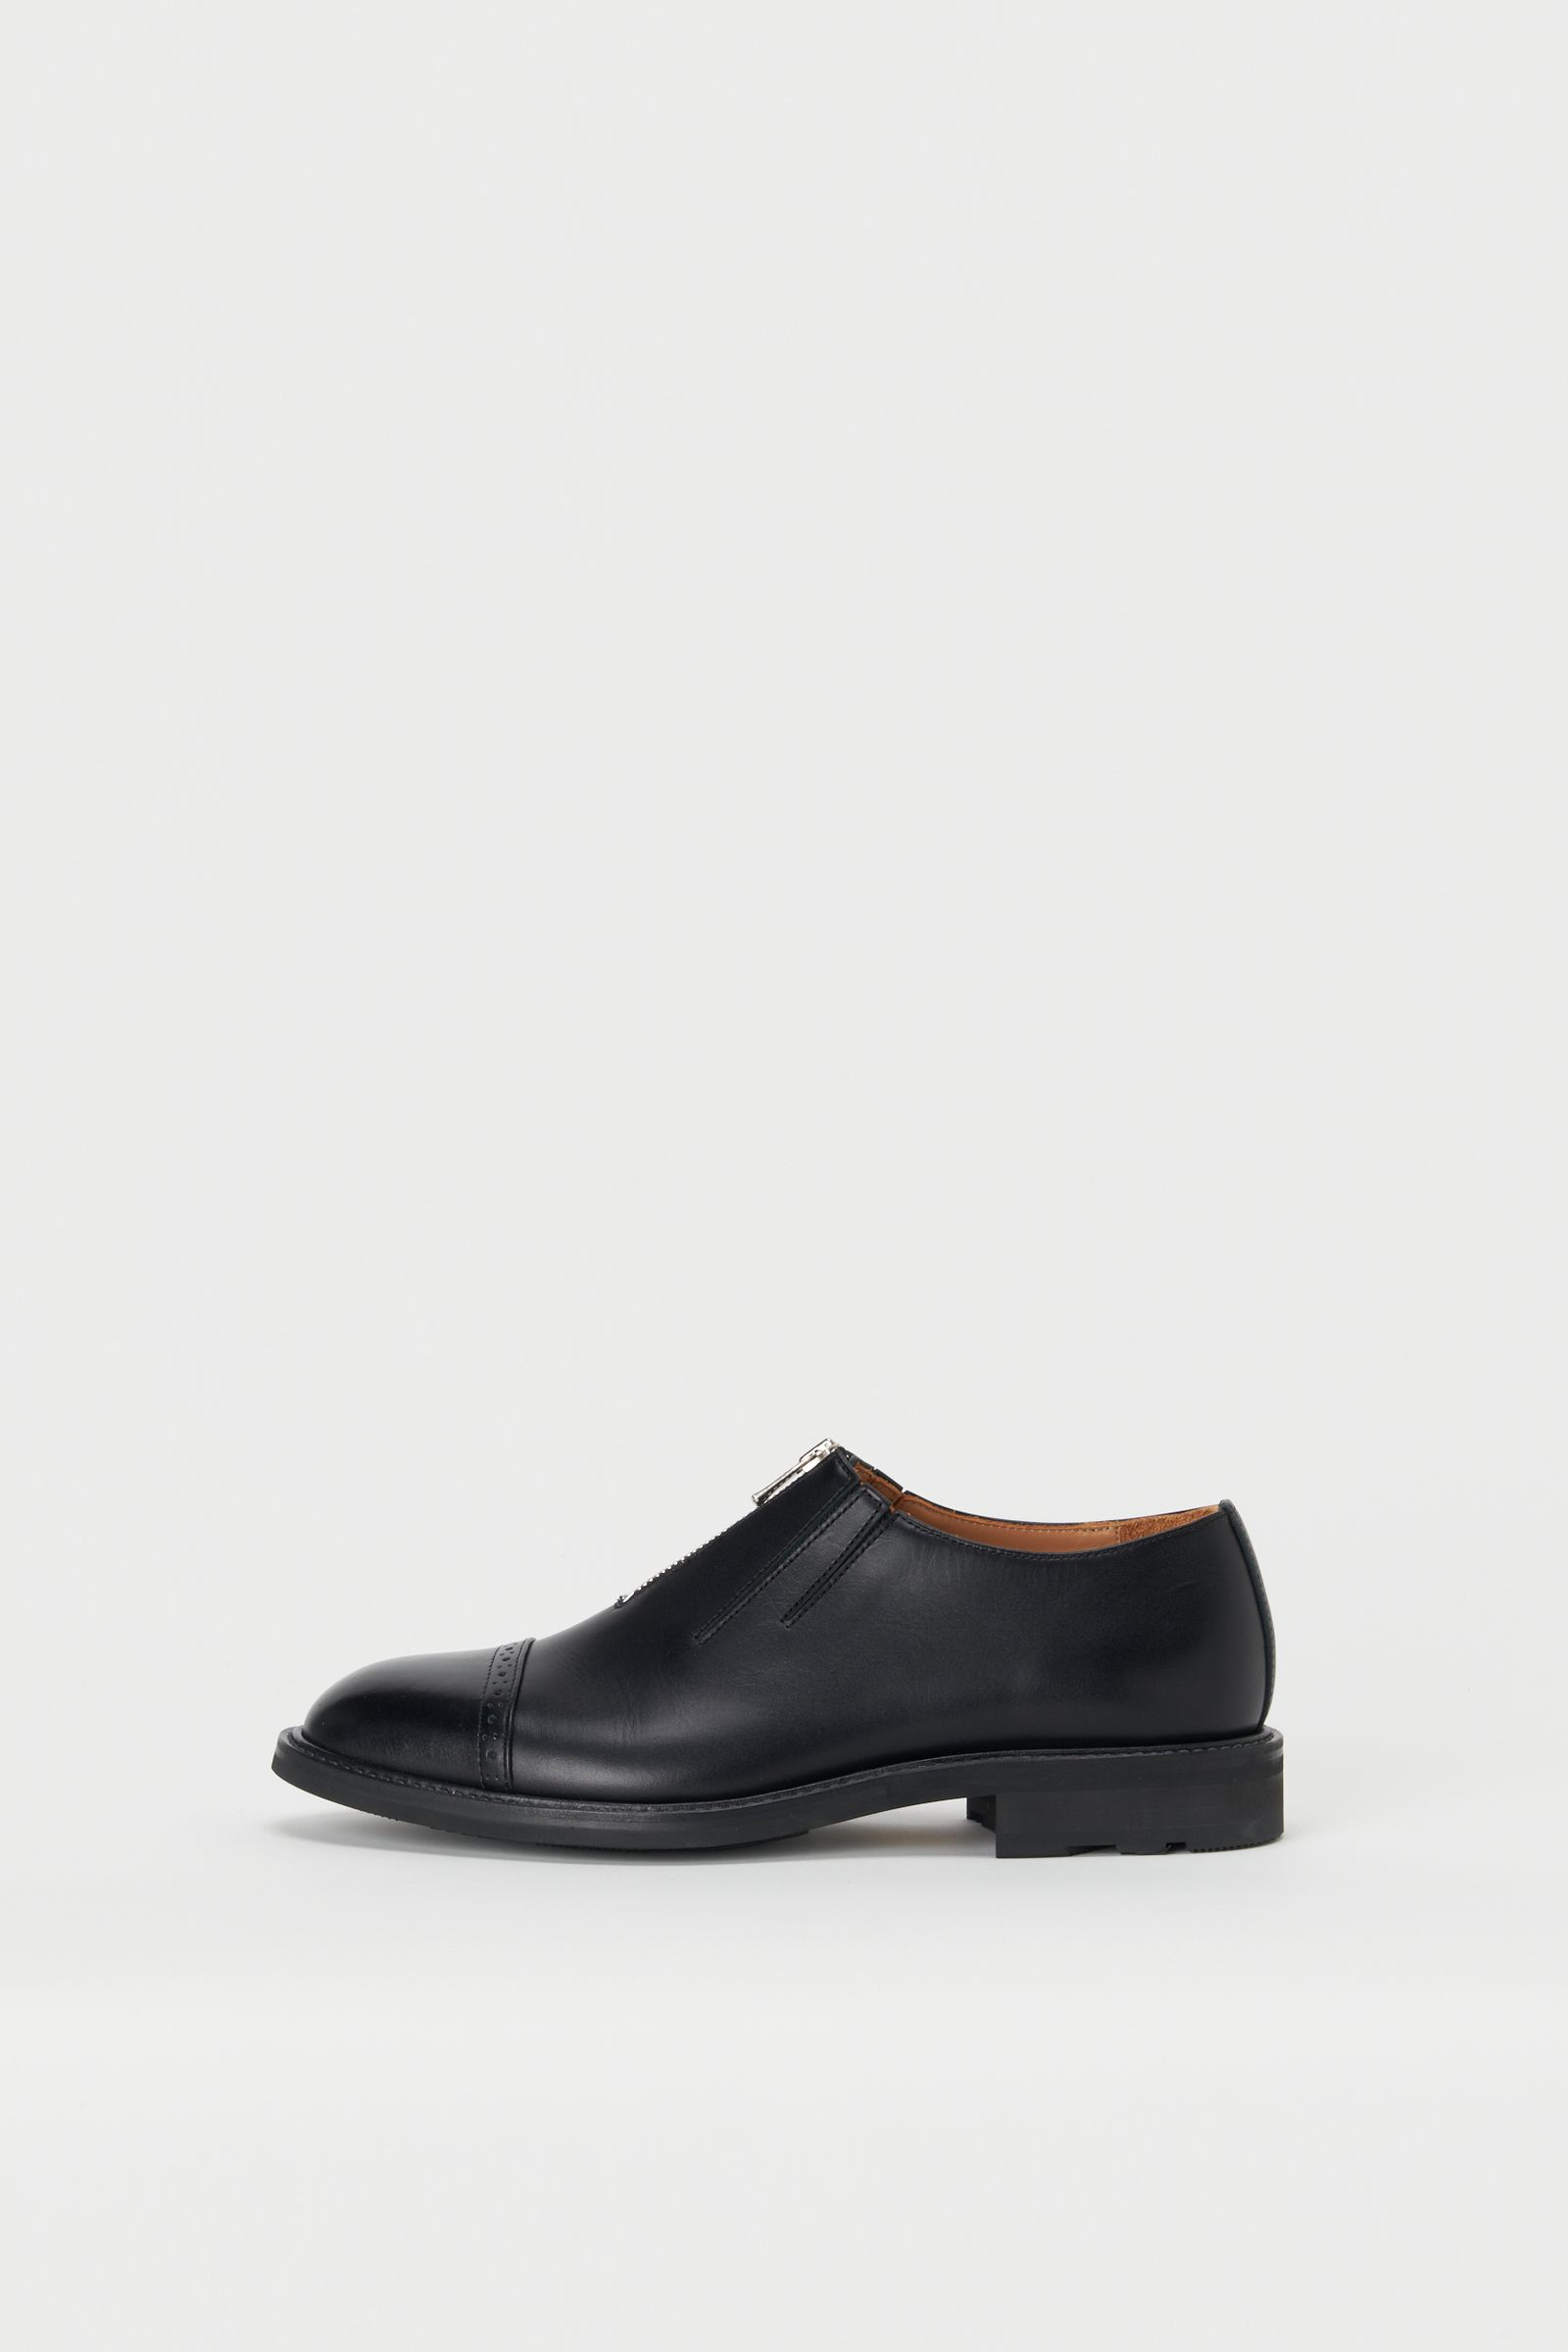 Hender Scheme - エンダースキーマ 革靴 front fastner(tq-s-ffa)BLACK 